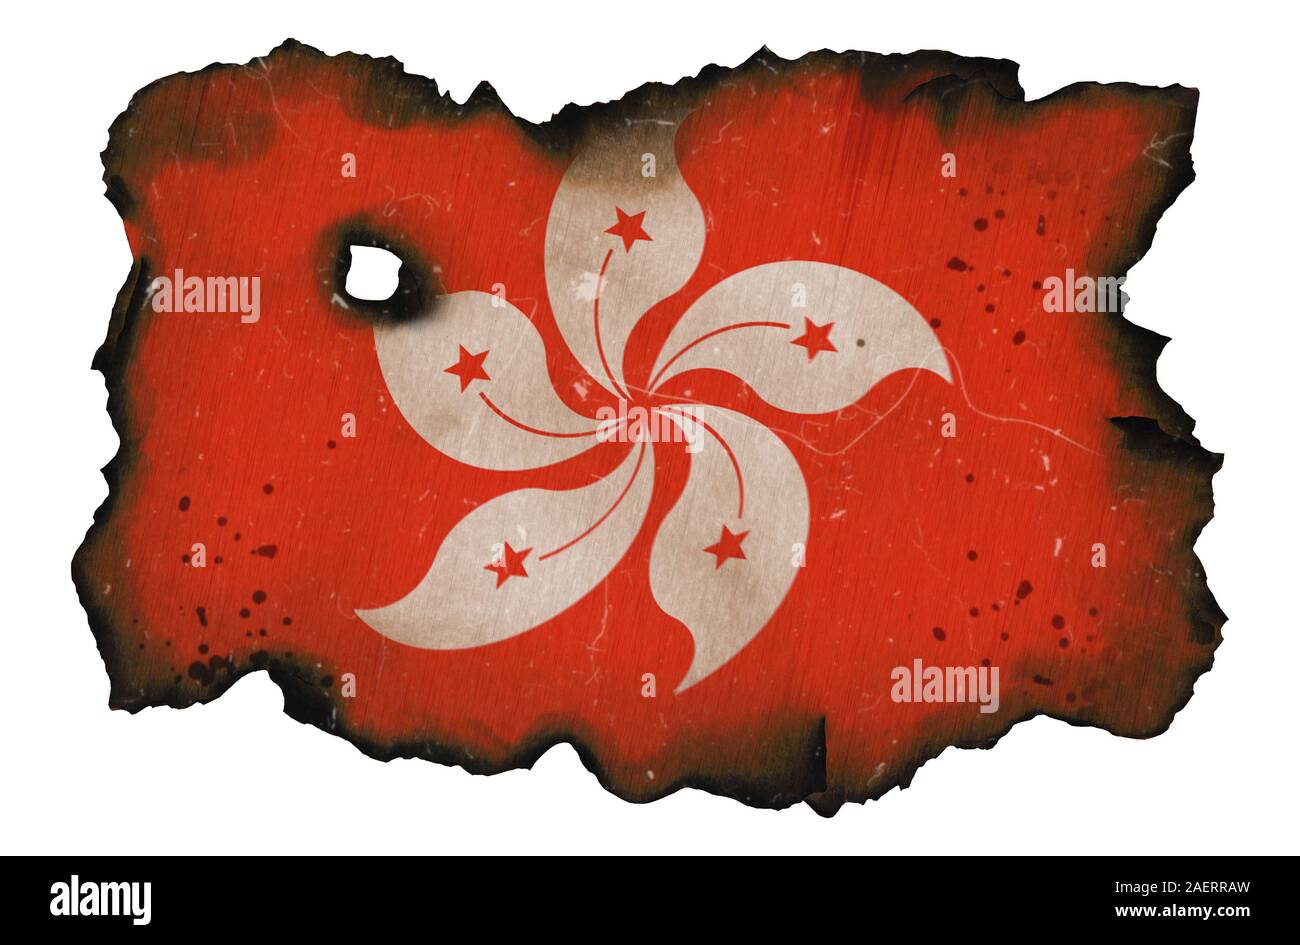 Drapeau brûlé de Hong-kong sur fond blanc isolé. Concept de protestations de Hong Kong. Bords carbonisés noirci de drapeau rouge avec arbre orchidée national fl Banque D'Images